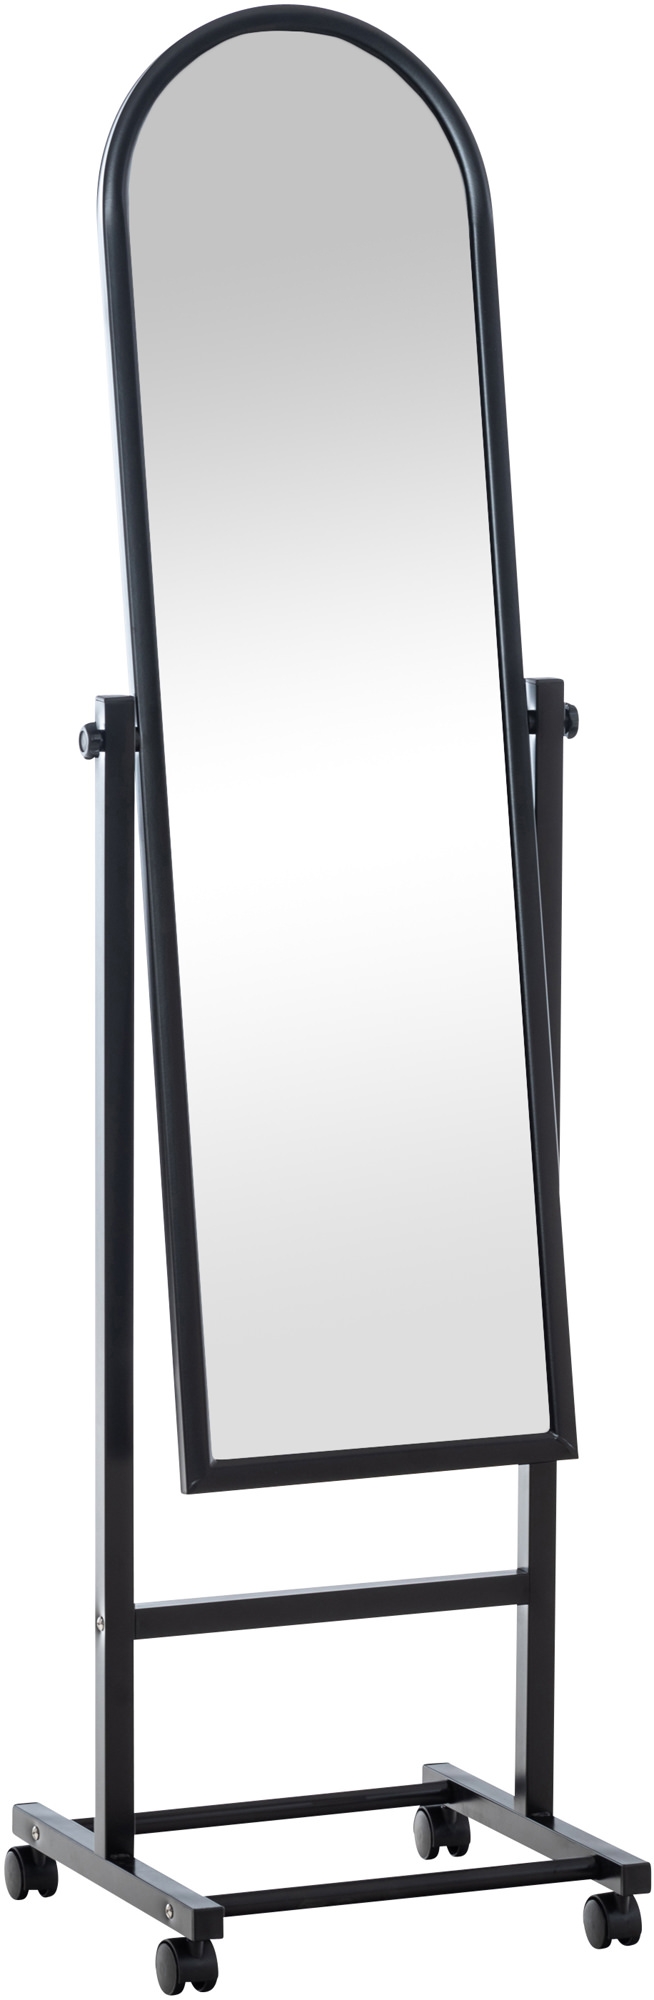 Specchio a figura intera Evoir con ruote - Specchi da terra - Bagno -  Soggiorno - sala da pranzo, bagno e ufficio I CLP